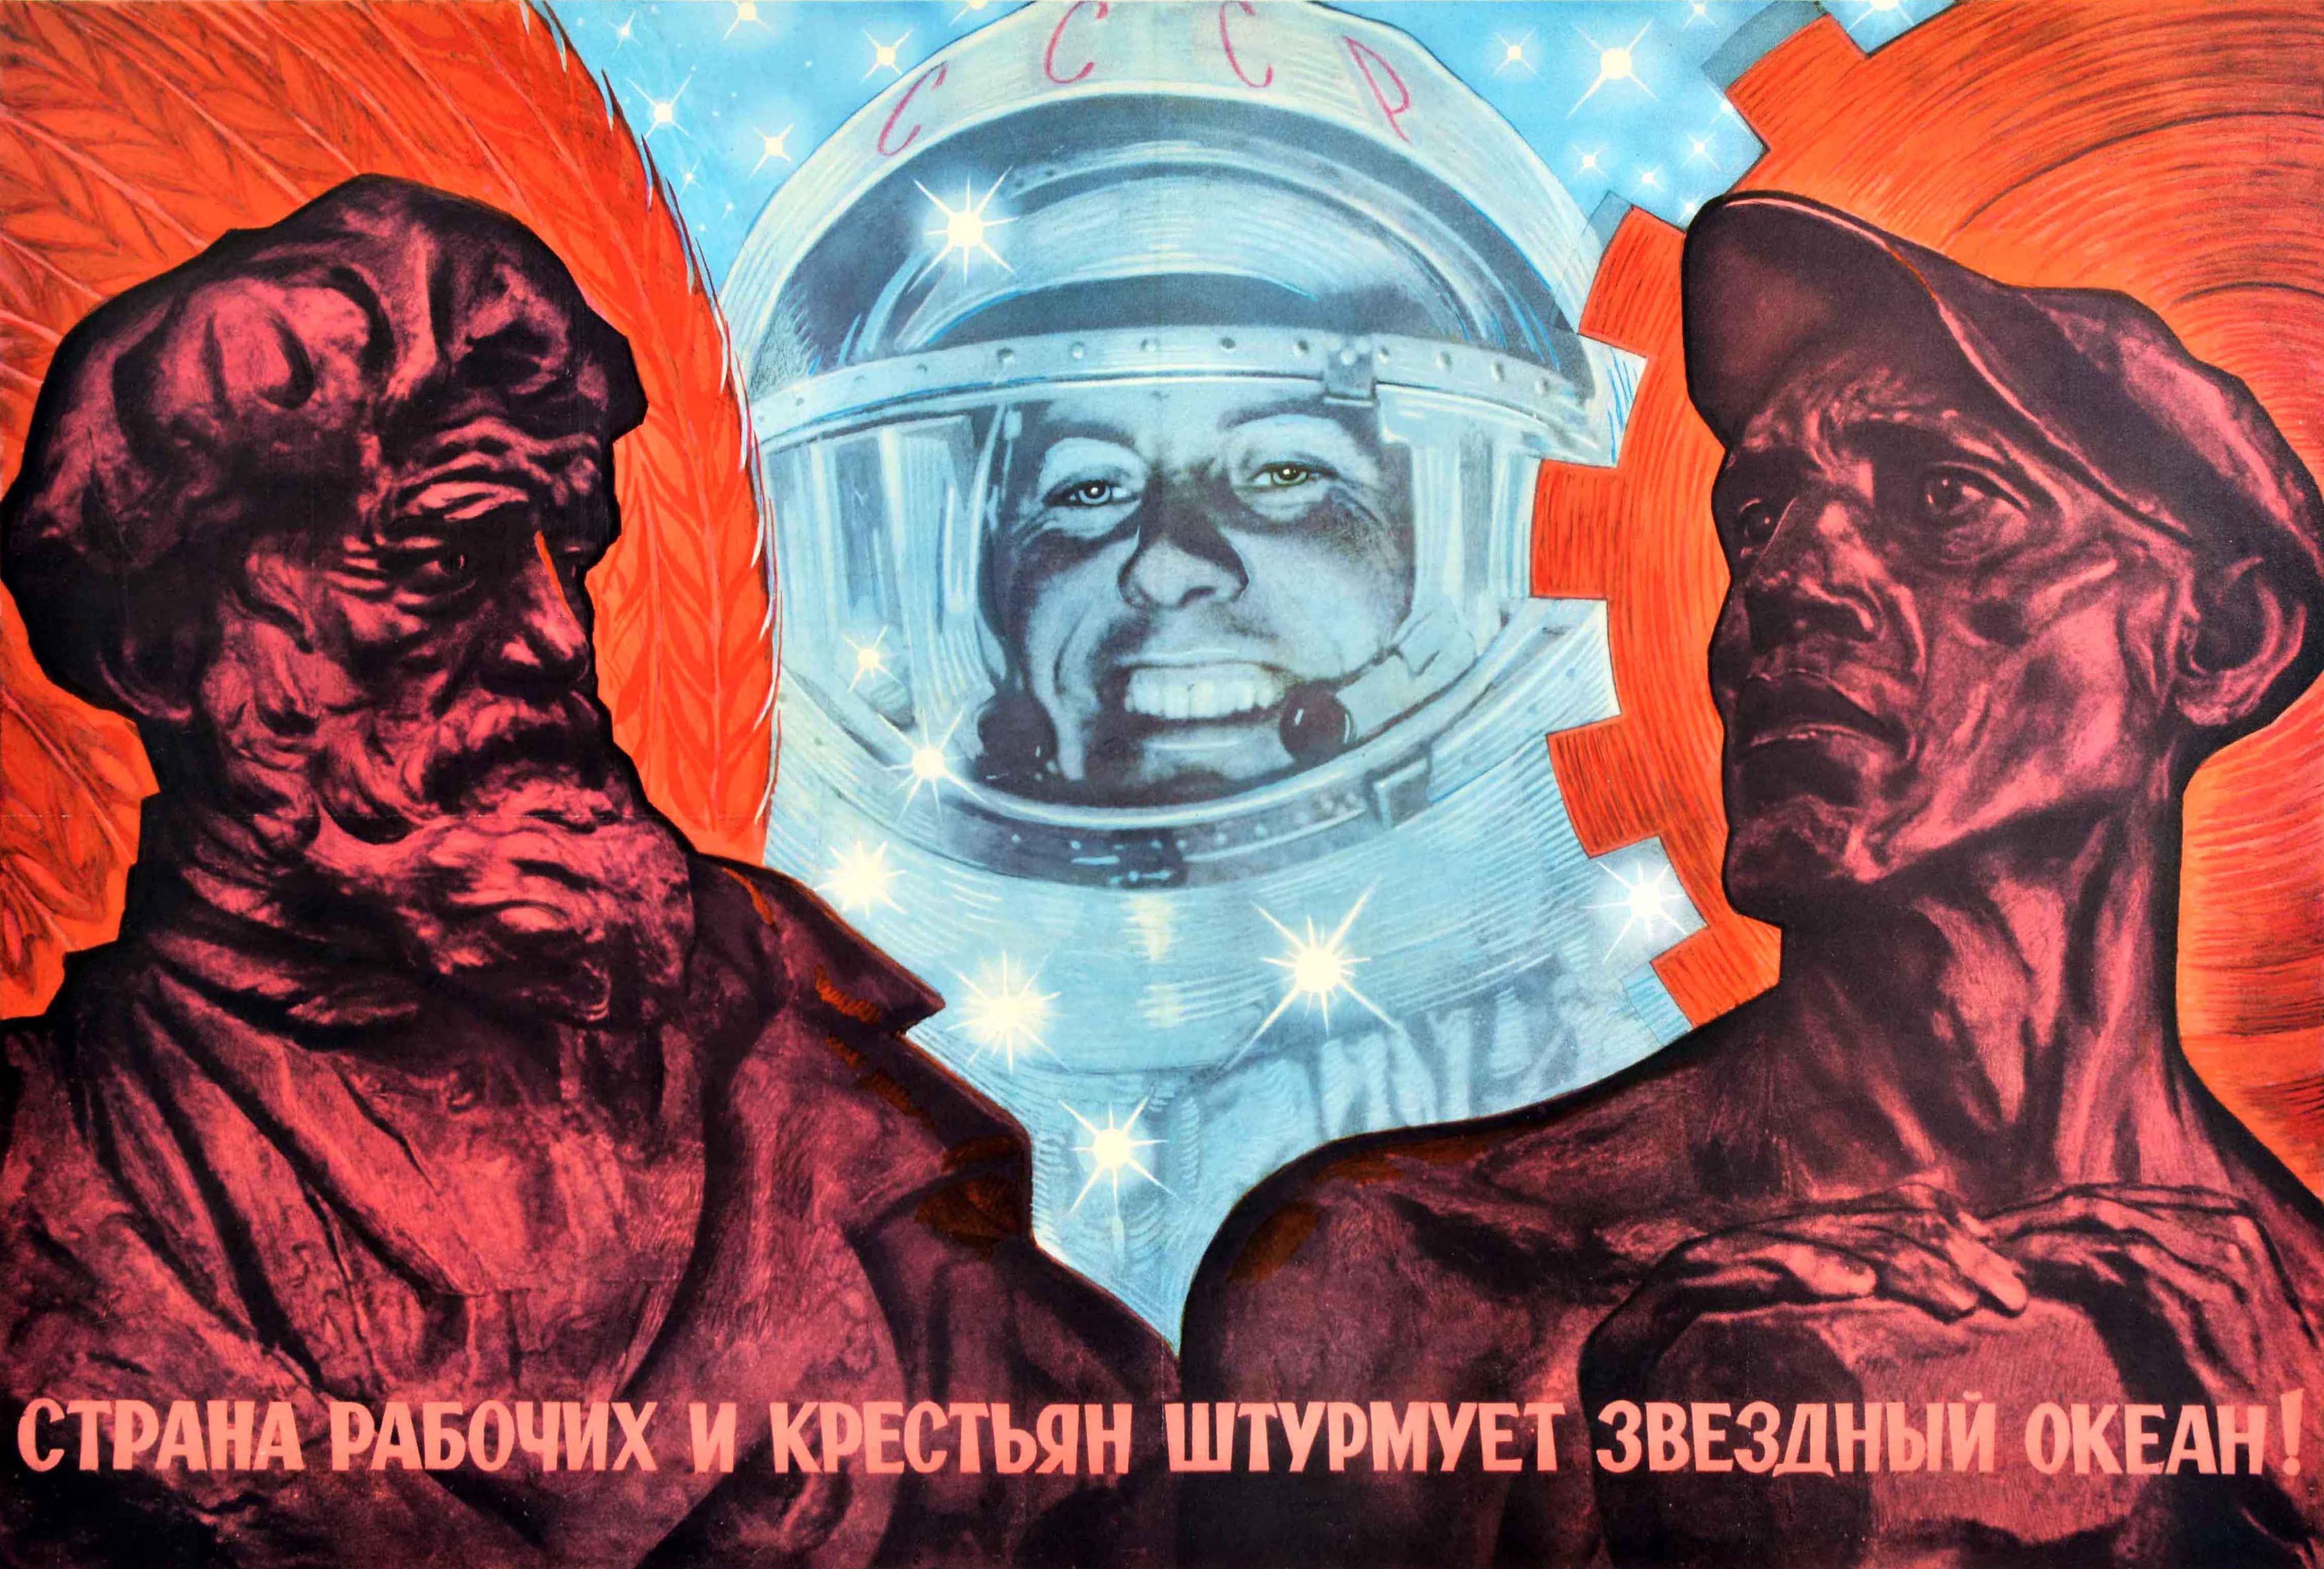 Affiche originale de propagande spatiale soviétique - Le pays des ouvriers et des paysans prend d'assaut l'océan étoilé / ? ????? ? ?????? ? ? ??????? ? ??????? ? ??????? ? ????! Une œuvre d'art dynamique du célèbre affichiste politique soviétique